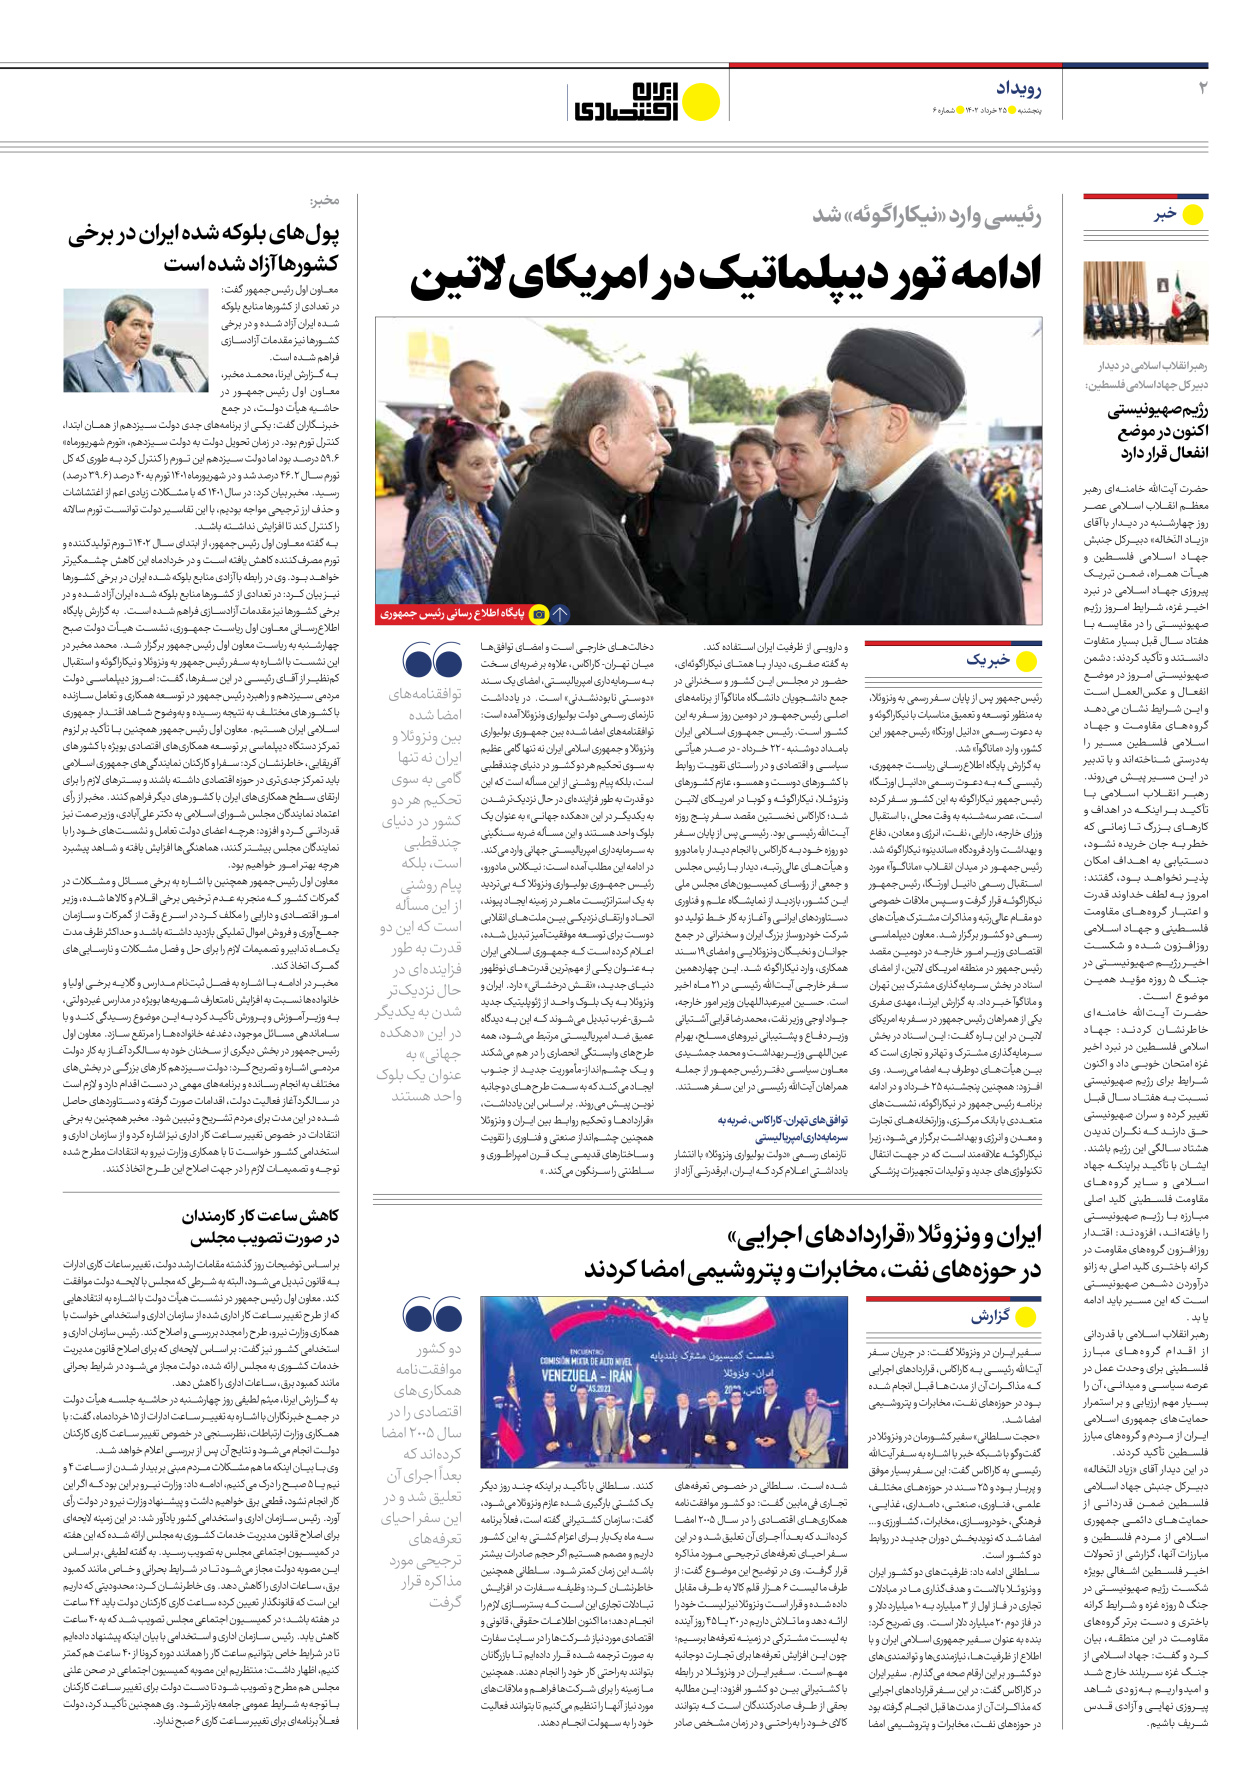 روزنامه ایران اقتصادی - شماره شش - ۲۵ خرداد ۱۴۰۲ - صفحه ۲